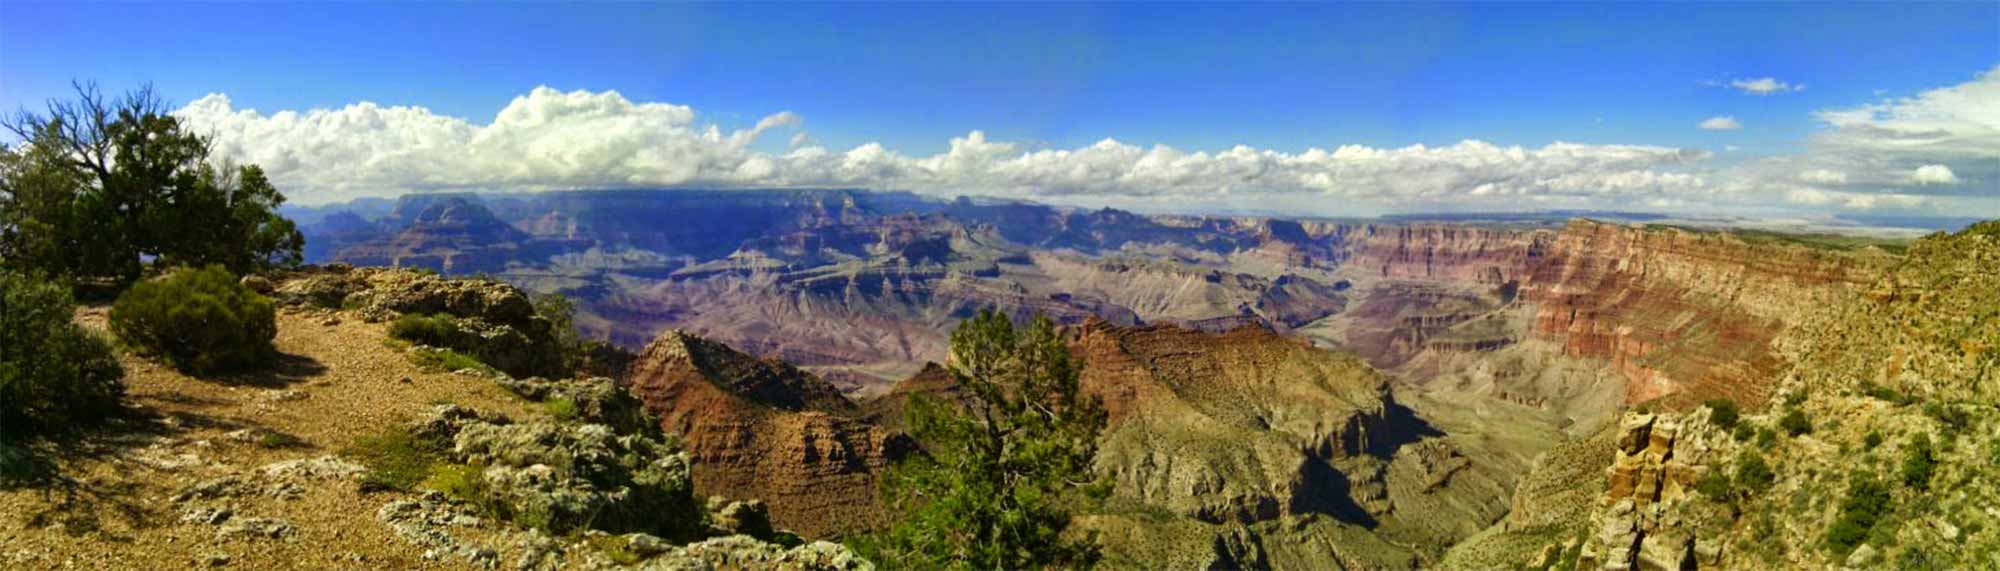 USA, Arizona, Grand Canyon, Desert View Watchtower